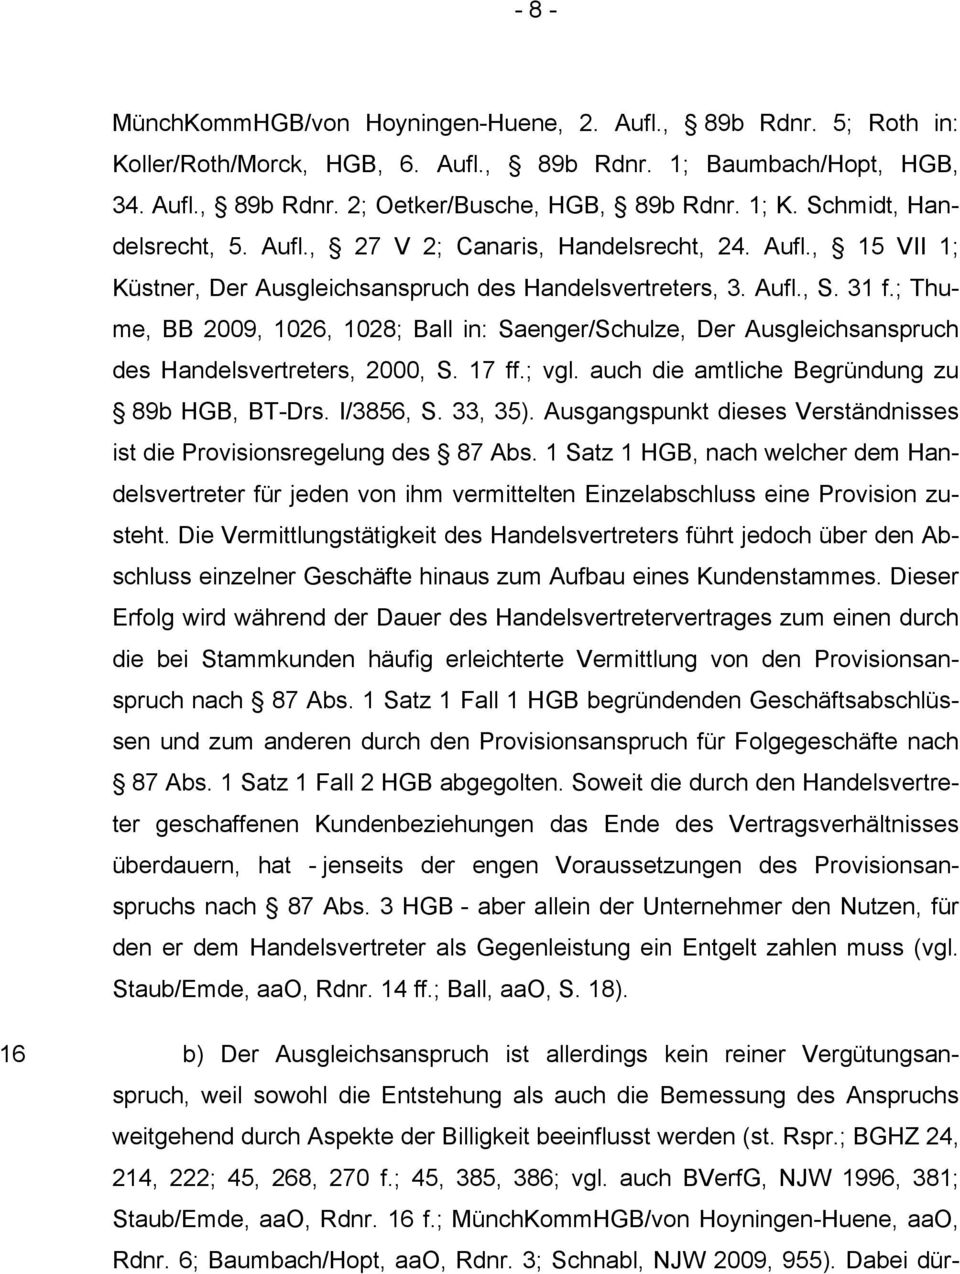 ; Thume, BB 2009, 1026, 1028; Ball in: Saenger/Schulze, Der Ausgleichsanspruch des Handelsvertreters, 2000, S. 17 ff.; vgl. auch die amtliche Begründung zu 89b HGB, BT-Drs. I/3856, S. 33, 35).